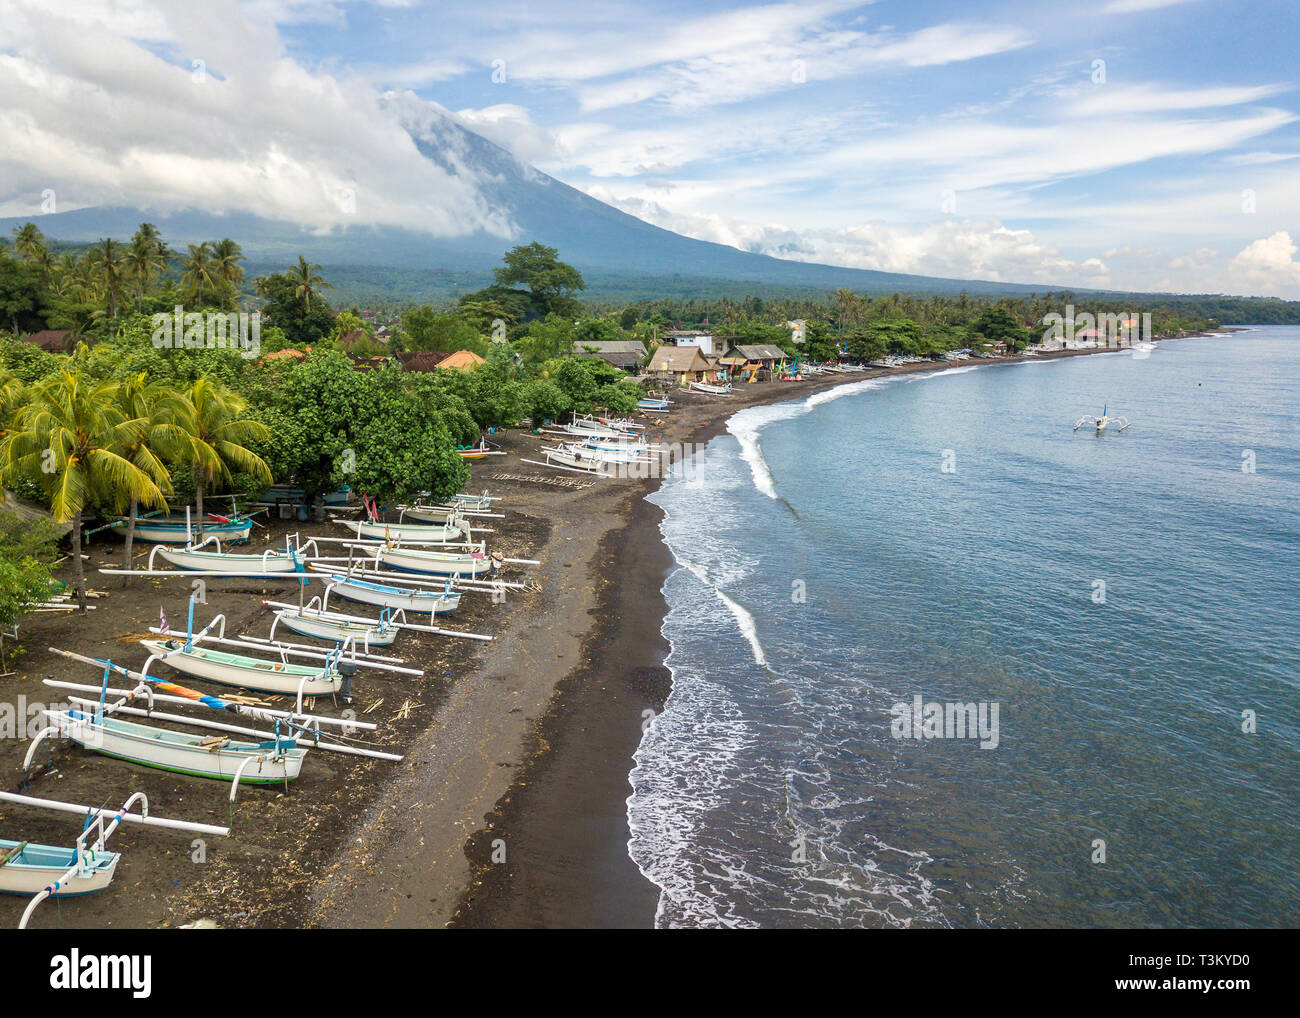 Luftaufnahme Von Amed Beach In Bali Indonesien Traditionelle Fischerboote Namens Jukung Am Schwarzen Sandstrand Und Mount Agung Vulkan In Der Backgroun Stockfotografie Alamy